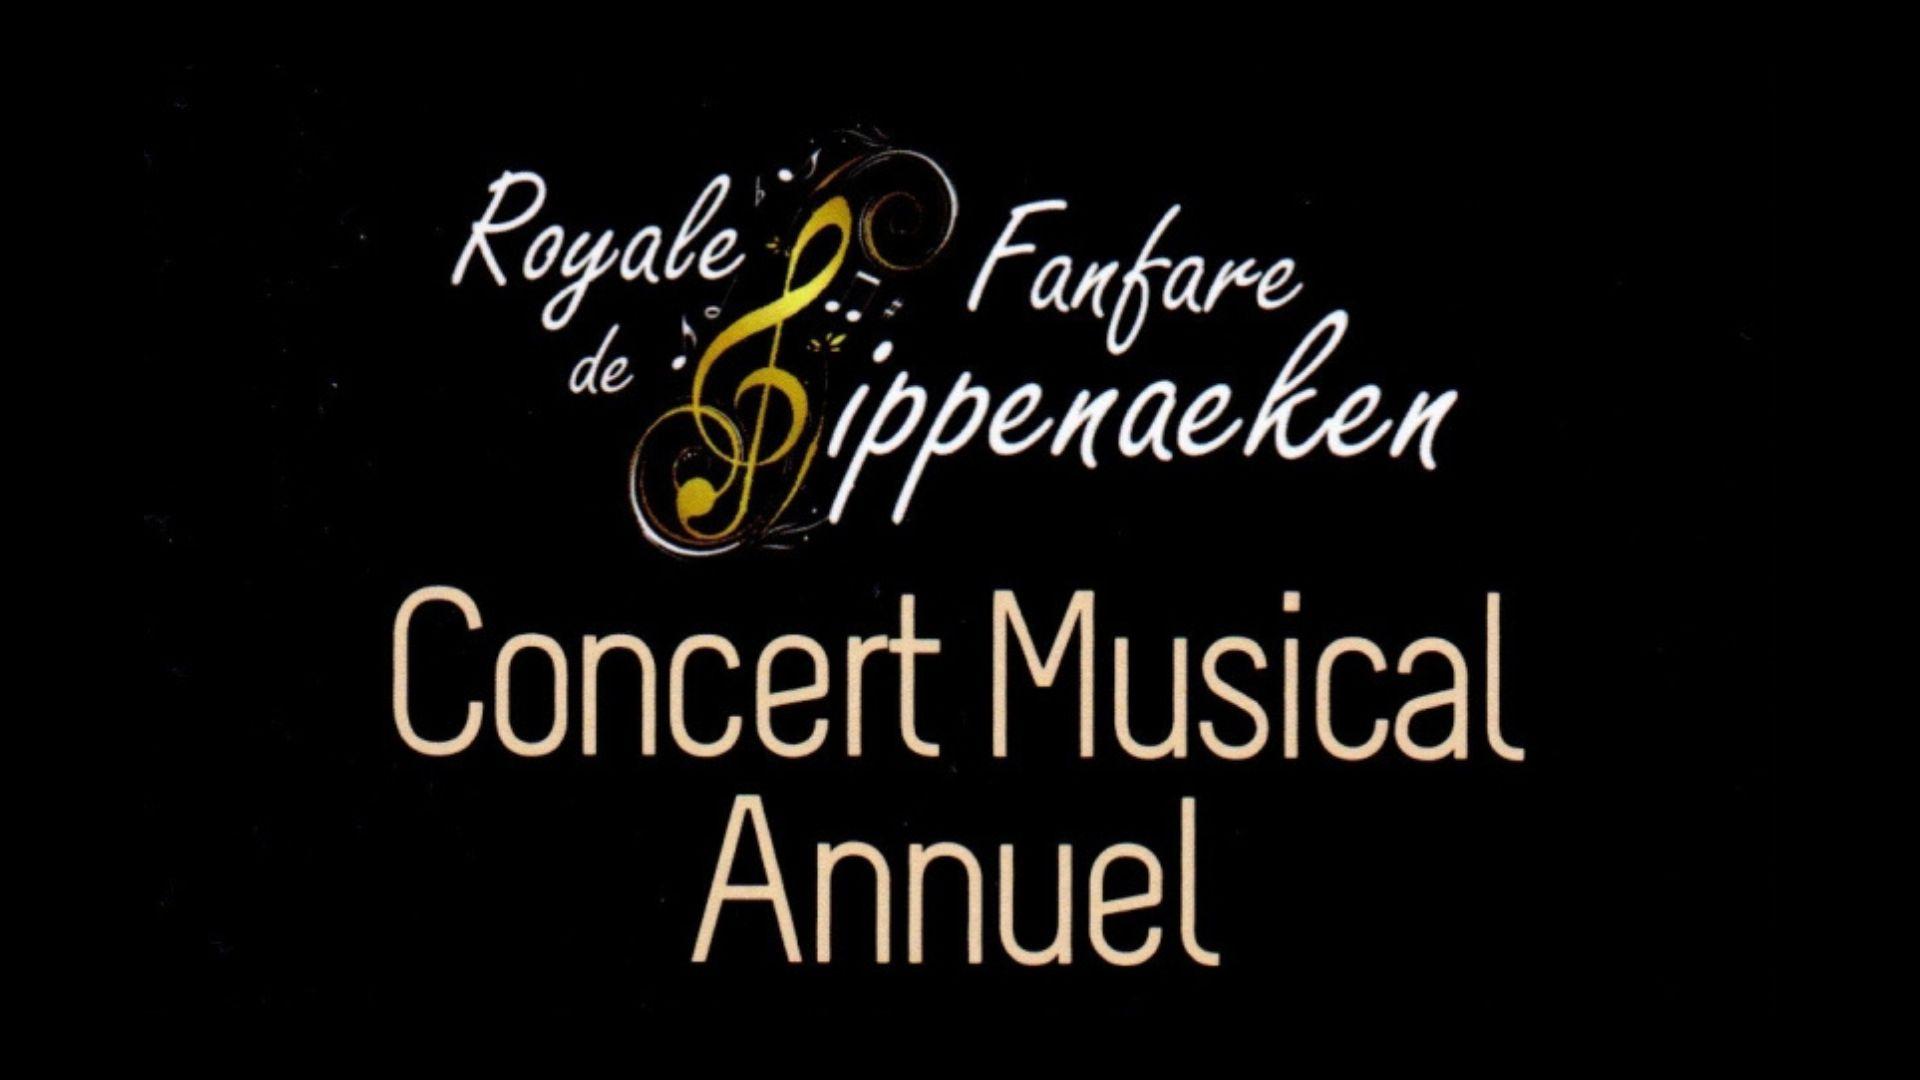 Concert annuel de la Royale Fanfare de Sippenaeken